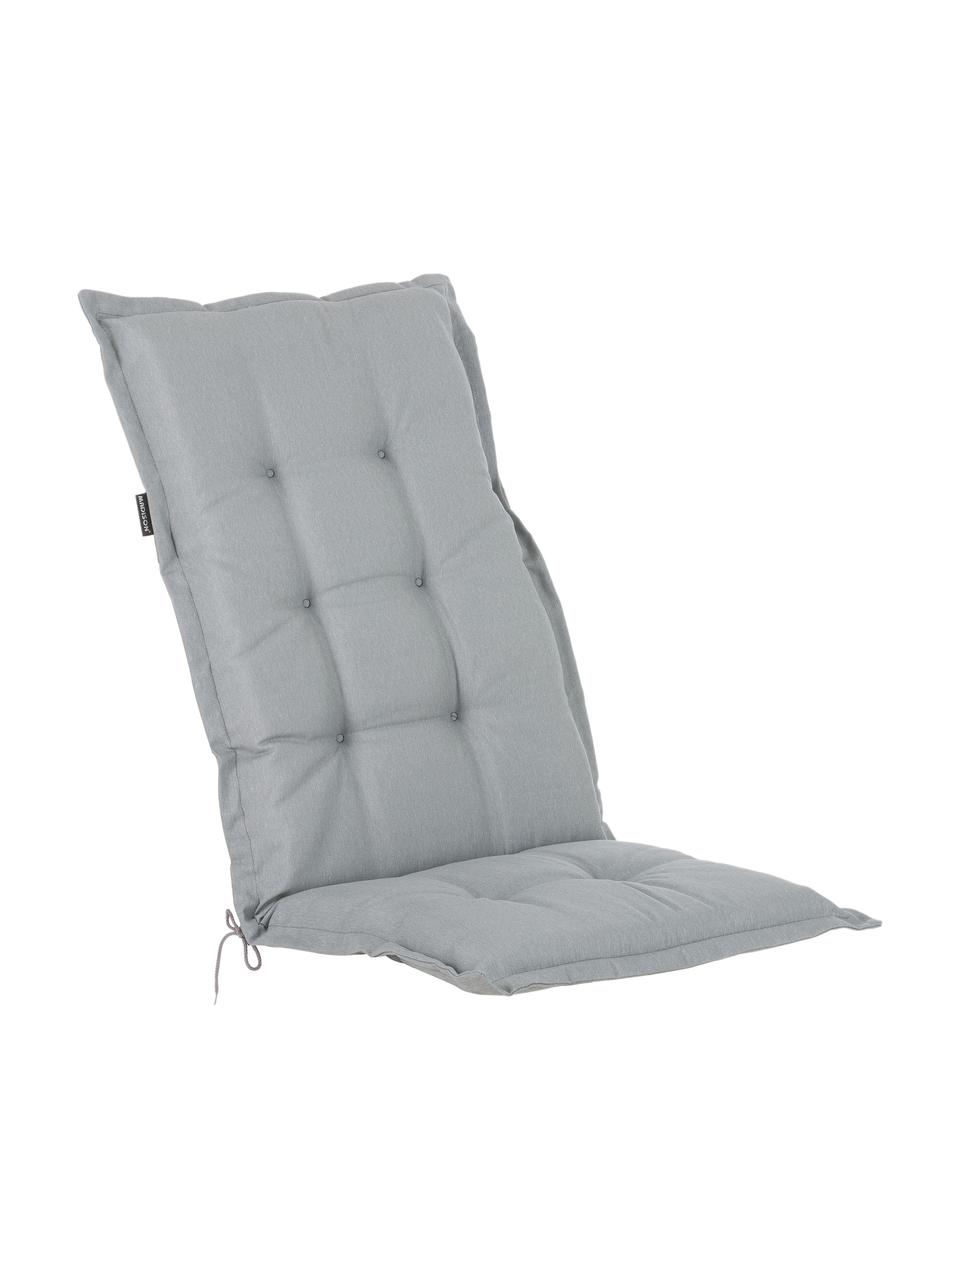 Einfarbige Hochlehner-Stuhlauflage Panama in Hellgrau, Bezug: 50% Baumwolle, 50% Polyes, Hellgrau, 50 x 123 cm